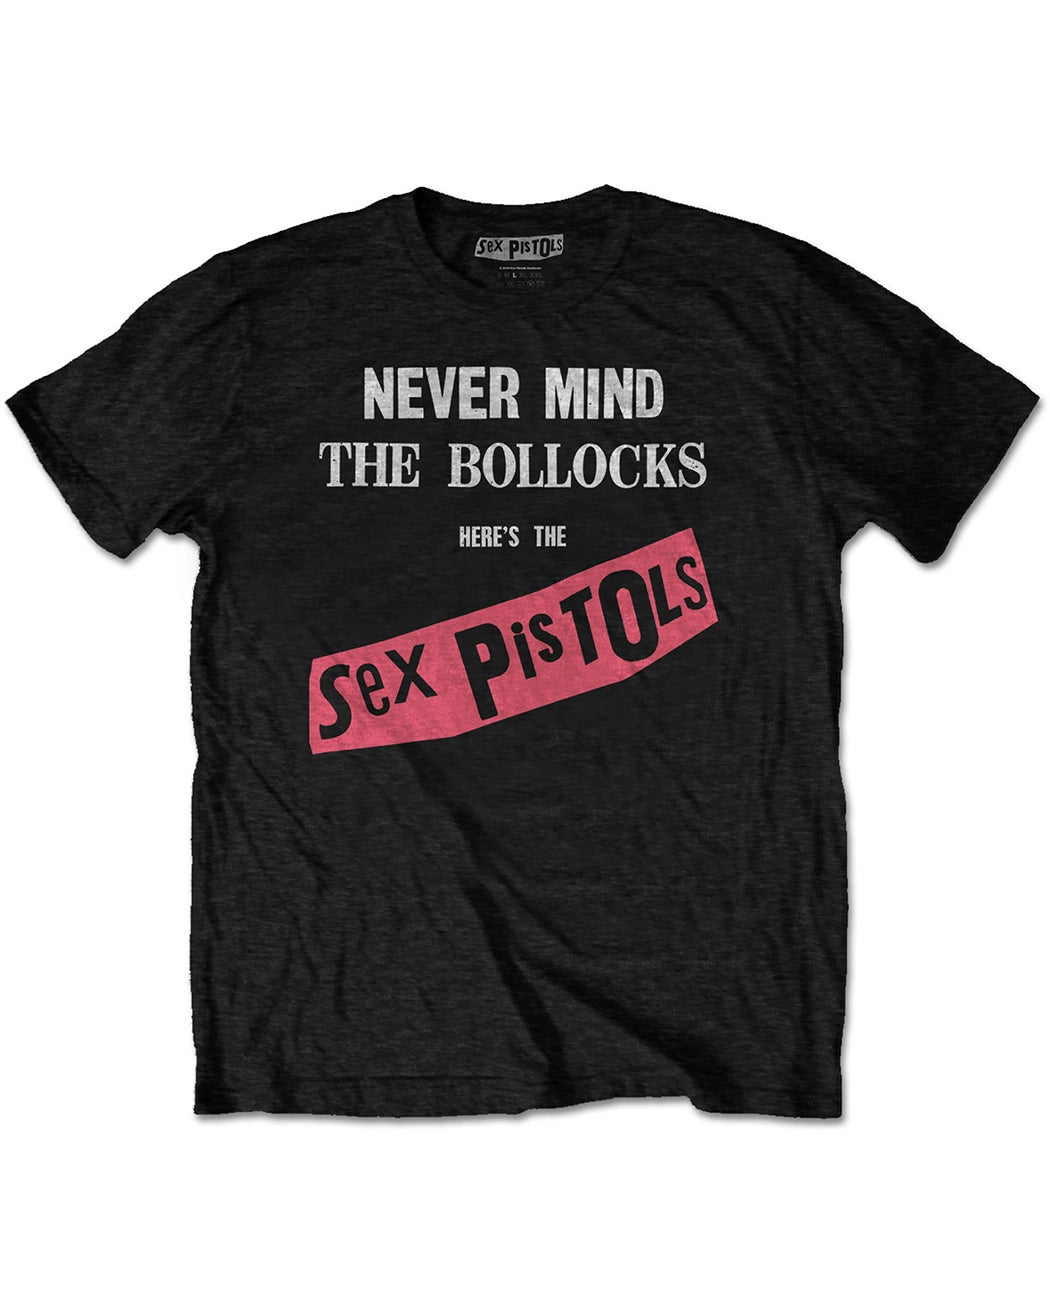 Bandshirt, Sex Pistols, NMTB Original Album